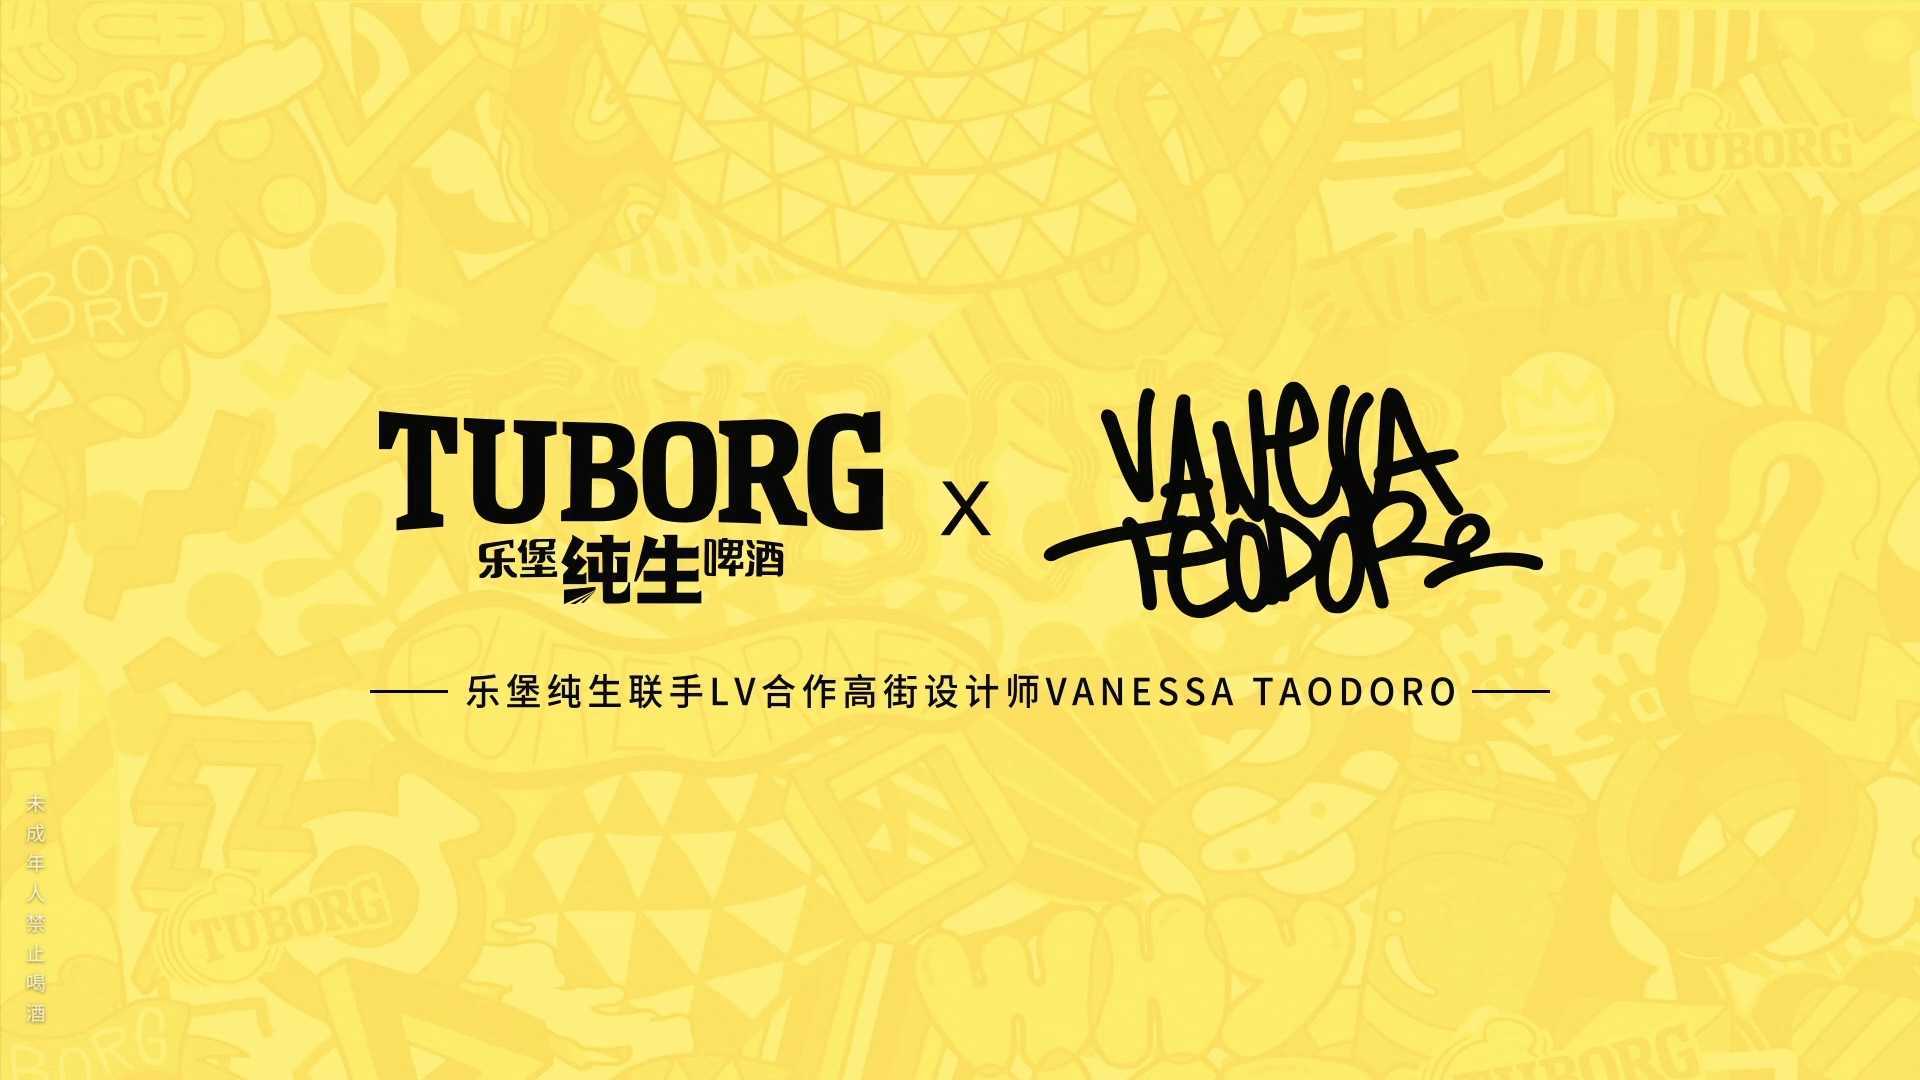 乐堡纯生 x Vanessa Teodoro丨葡萄牙设计师联名设计